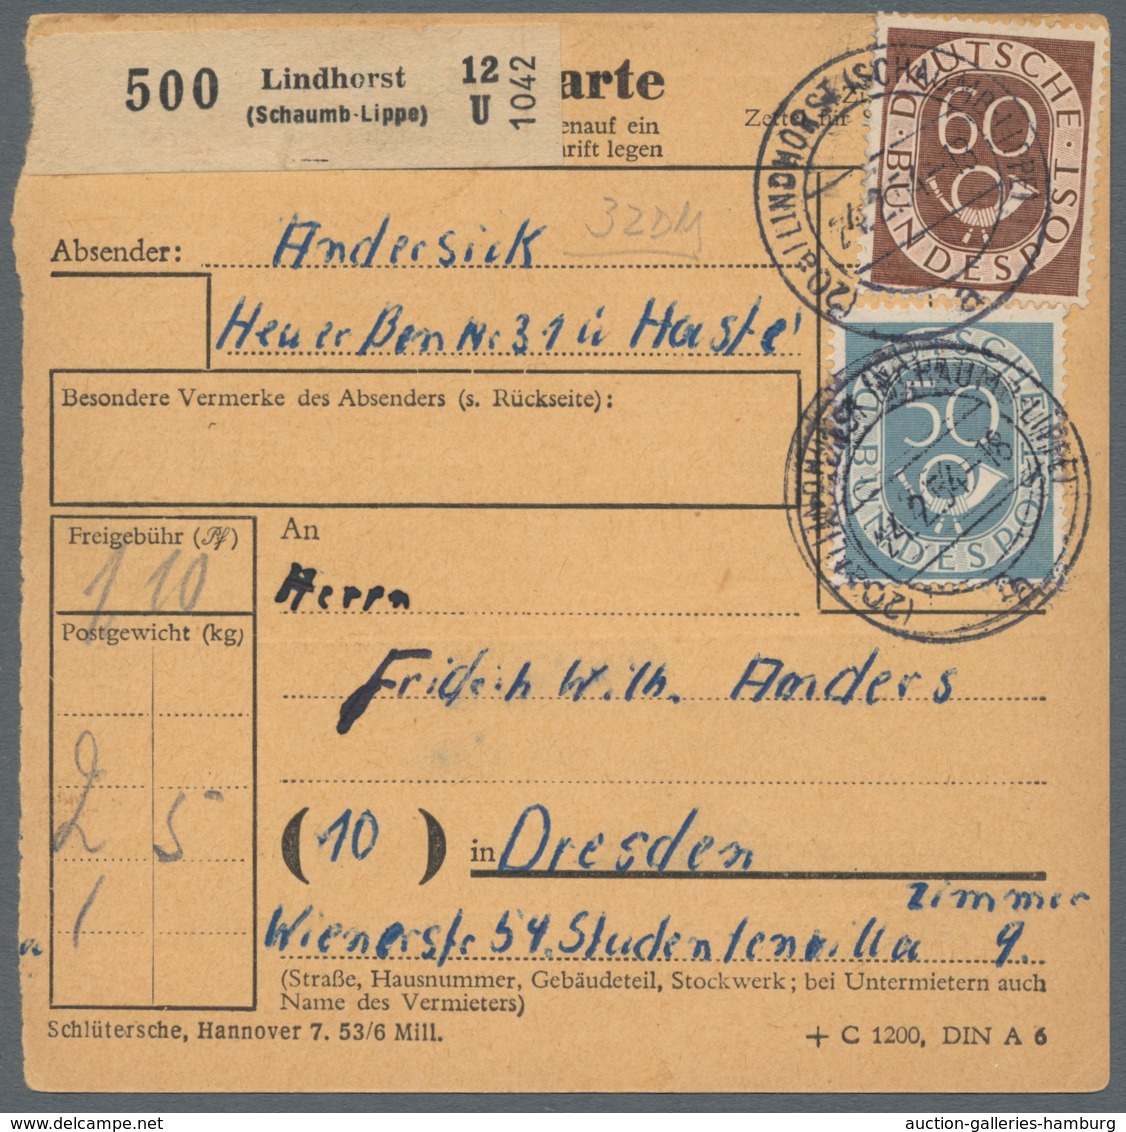 Bundesrepublik Deutschland: 1951-1954, Sammlung von 30 Belegen der Posthornserie mit u.a. Auslandsde